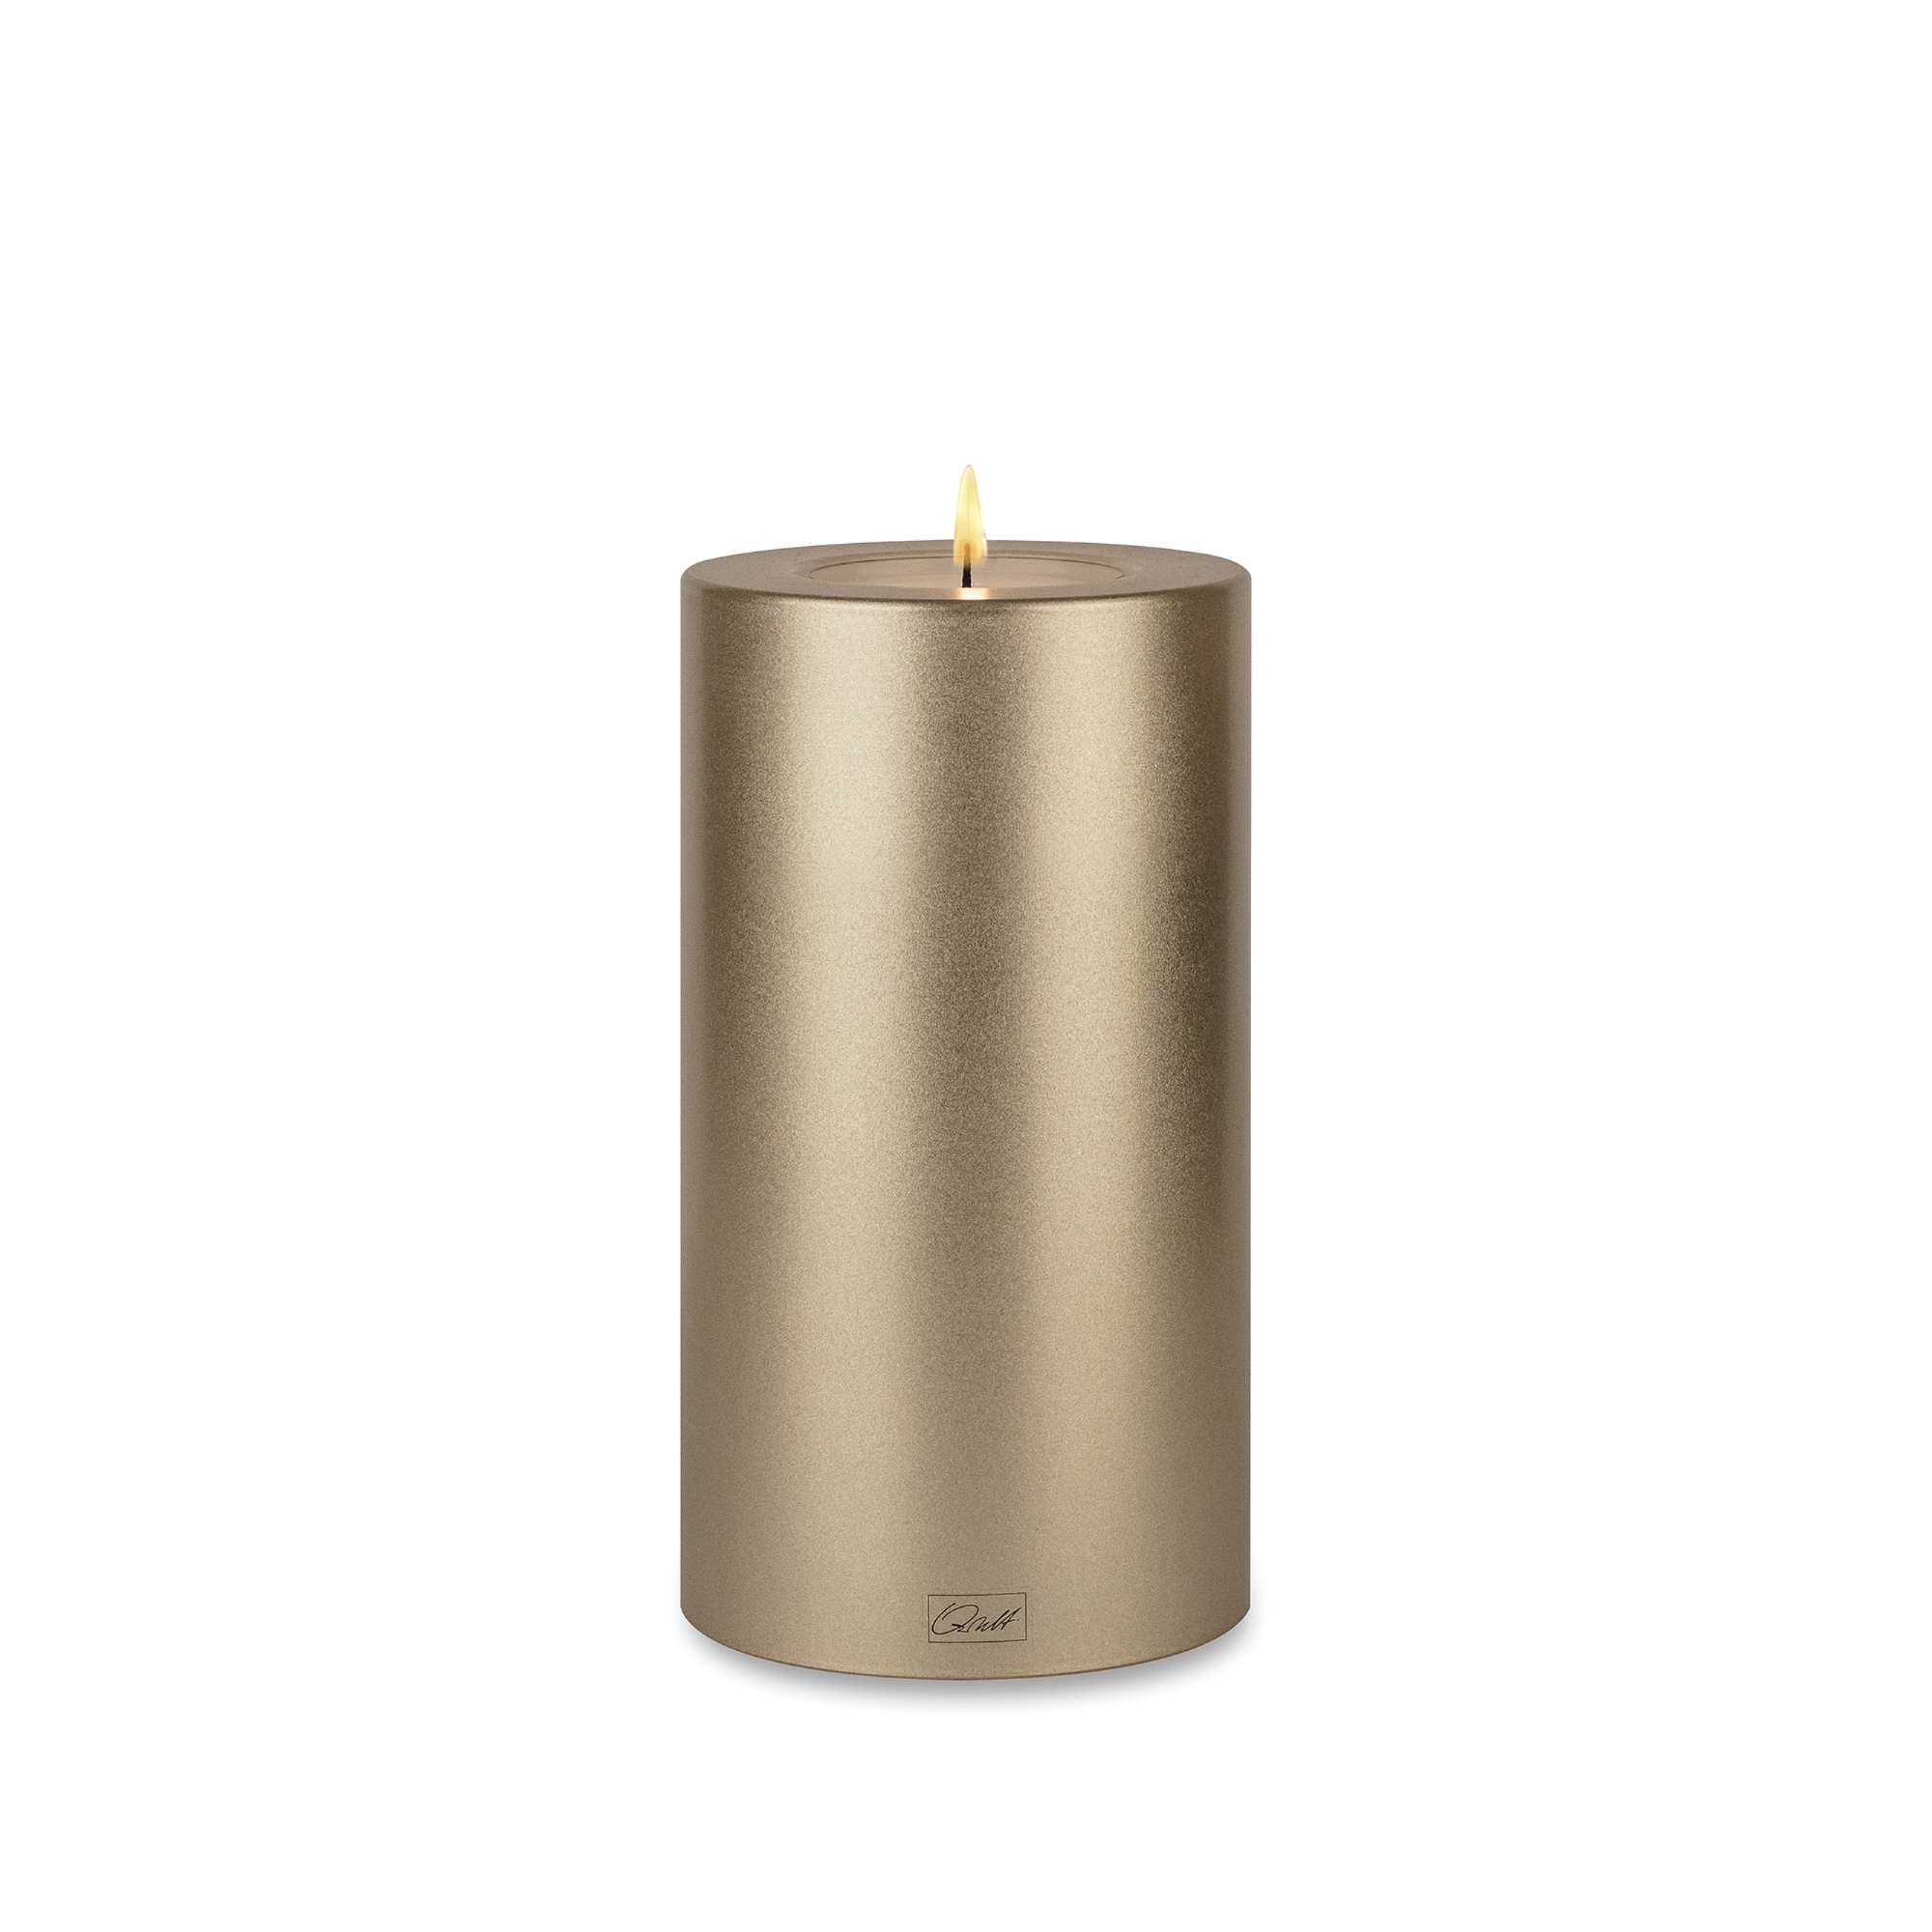 Qult Farluce Trend - Tealight Candle Holder - cremegold